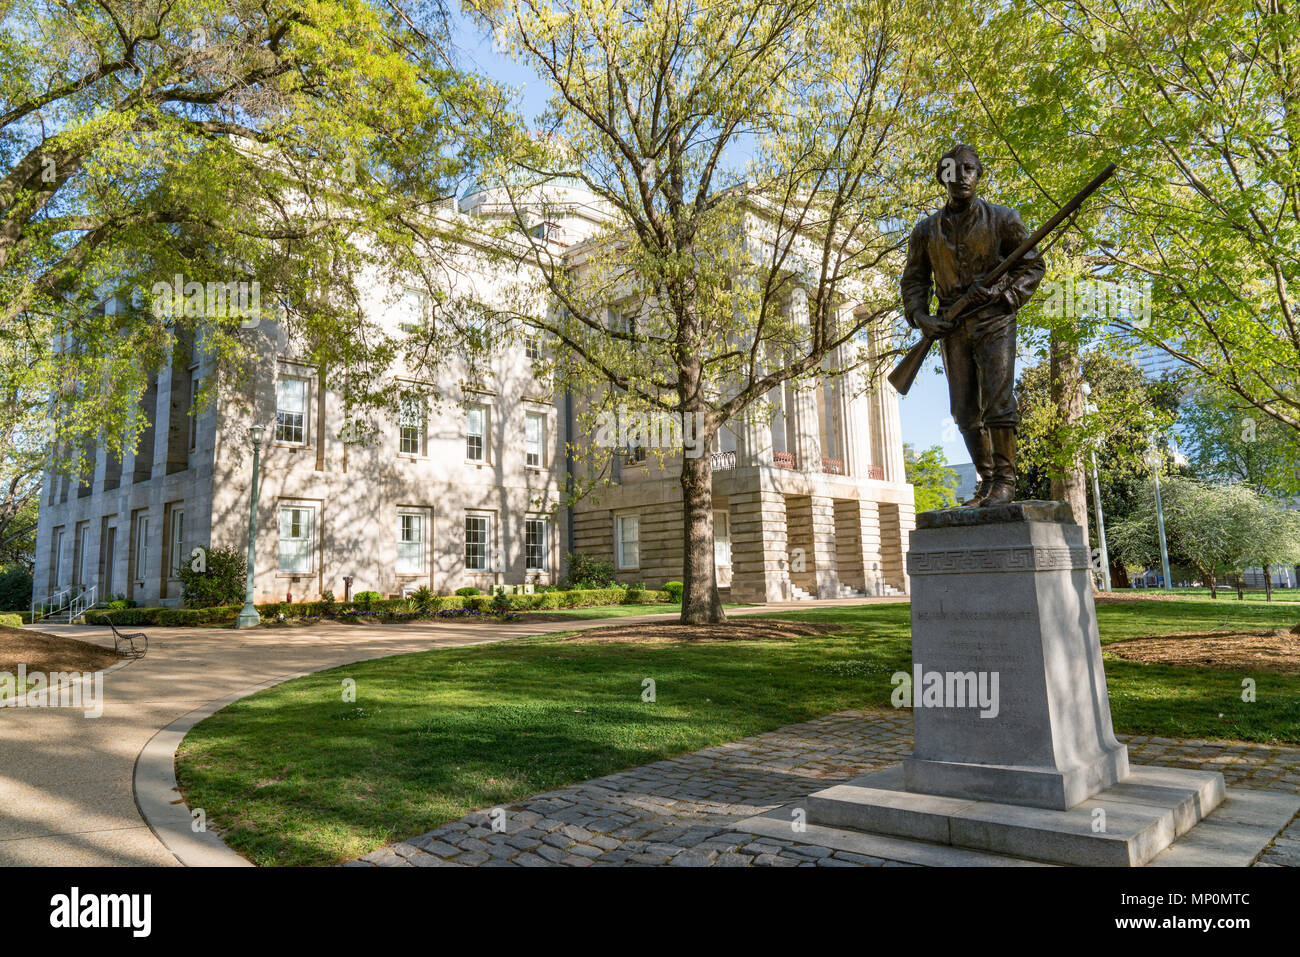 RALEIGH, NC - 17. APRIL 2018: Bürgerkrieg Statue von Henry Lawson Wyatt auf dem Gelände des Capitol Building in North Carolina Raleigh Stockfoto